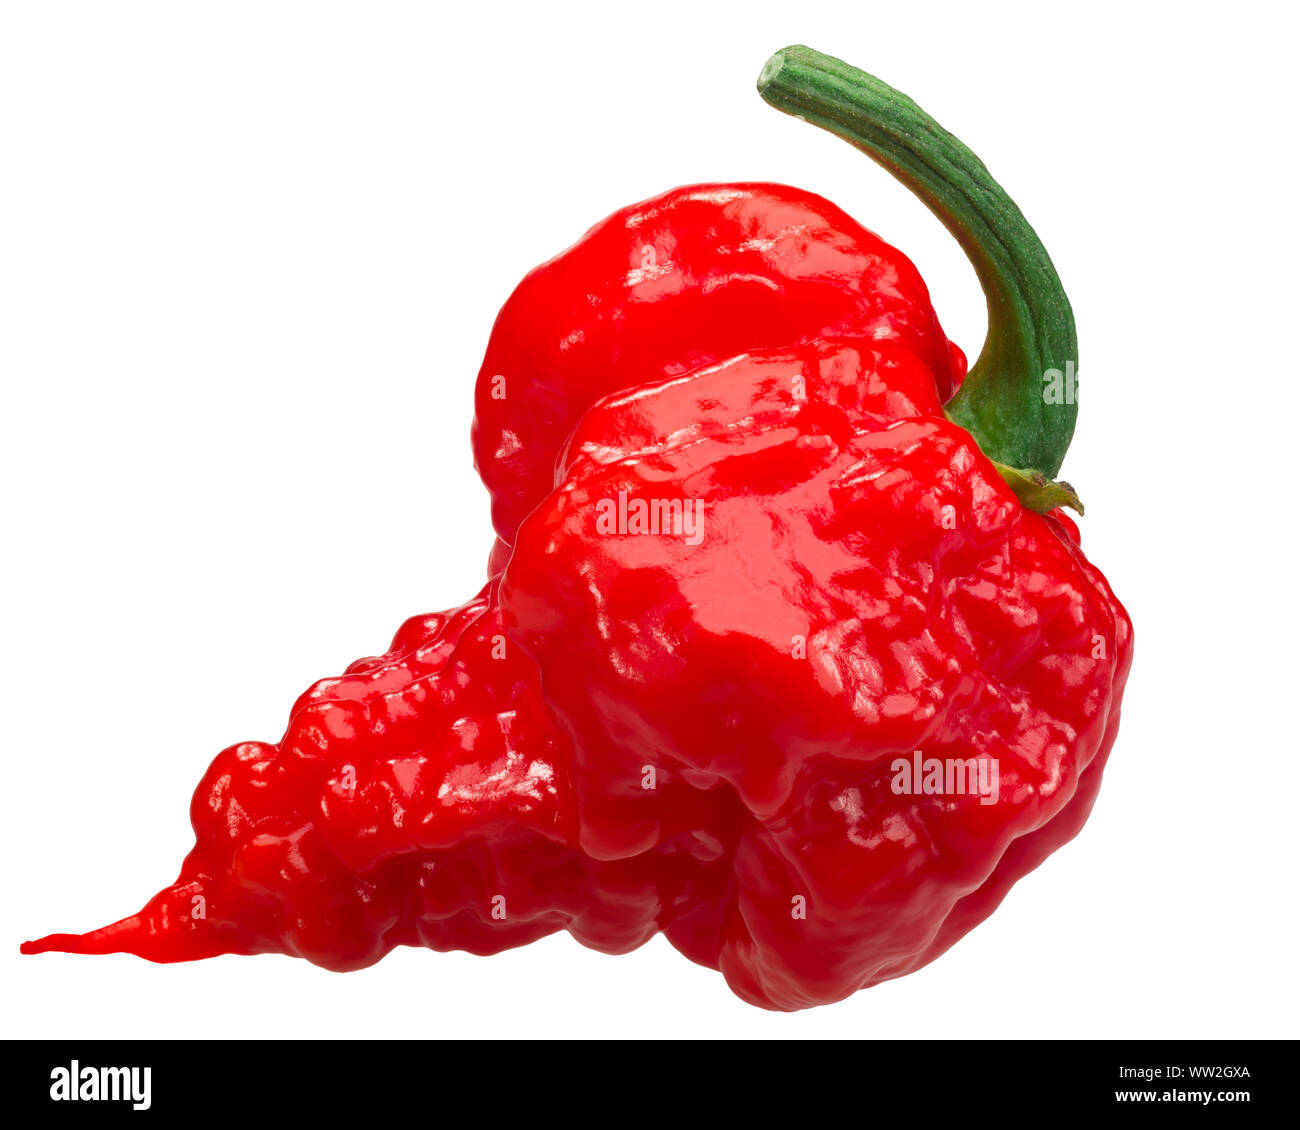 Pepper x Banque d'images détourées - Alamy